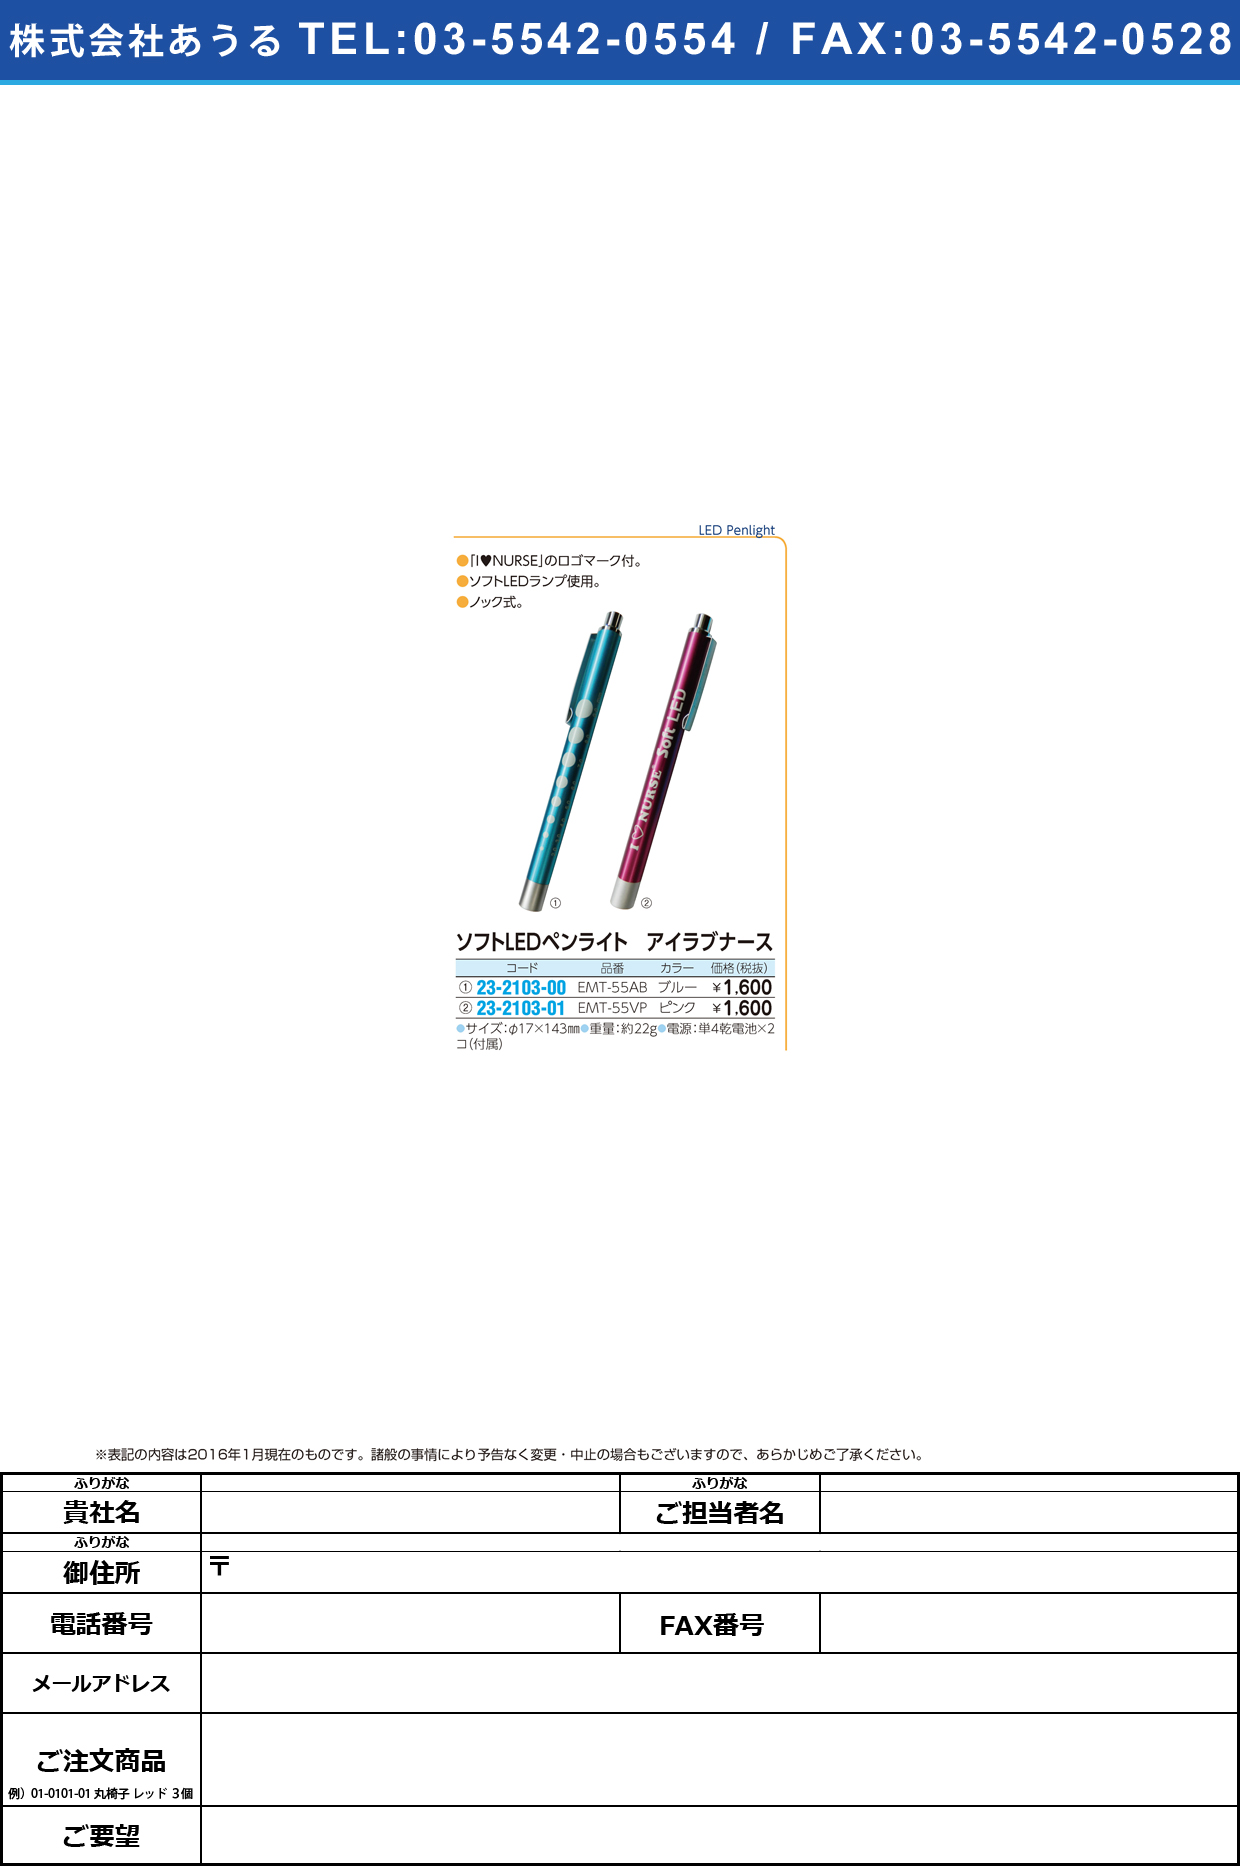 (23-2103-00)アイラブナースペンライトソフトＬＥＤ ｱｲﾗﾌﾞﾅｰｽﾍﾟﾝﾗｲﾄｿﾌﾄLED EMT-55AB(ﾌﾞﾙｰ)ﾉｯｸｼｷ【1本単位】【2016年カタログ商品】